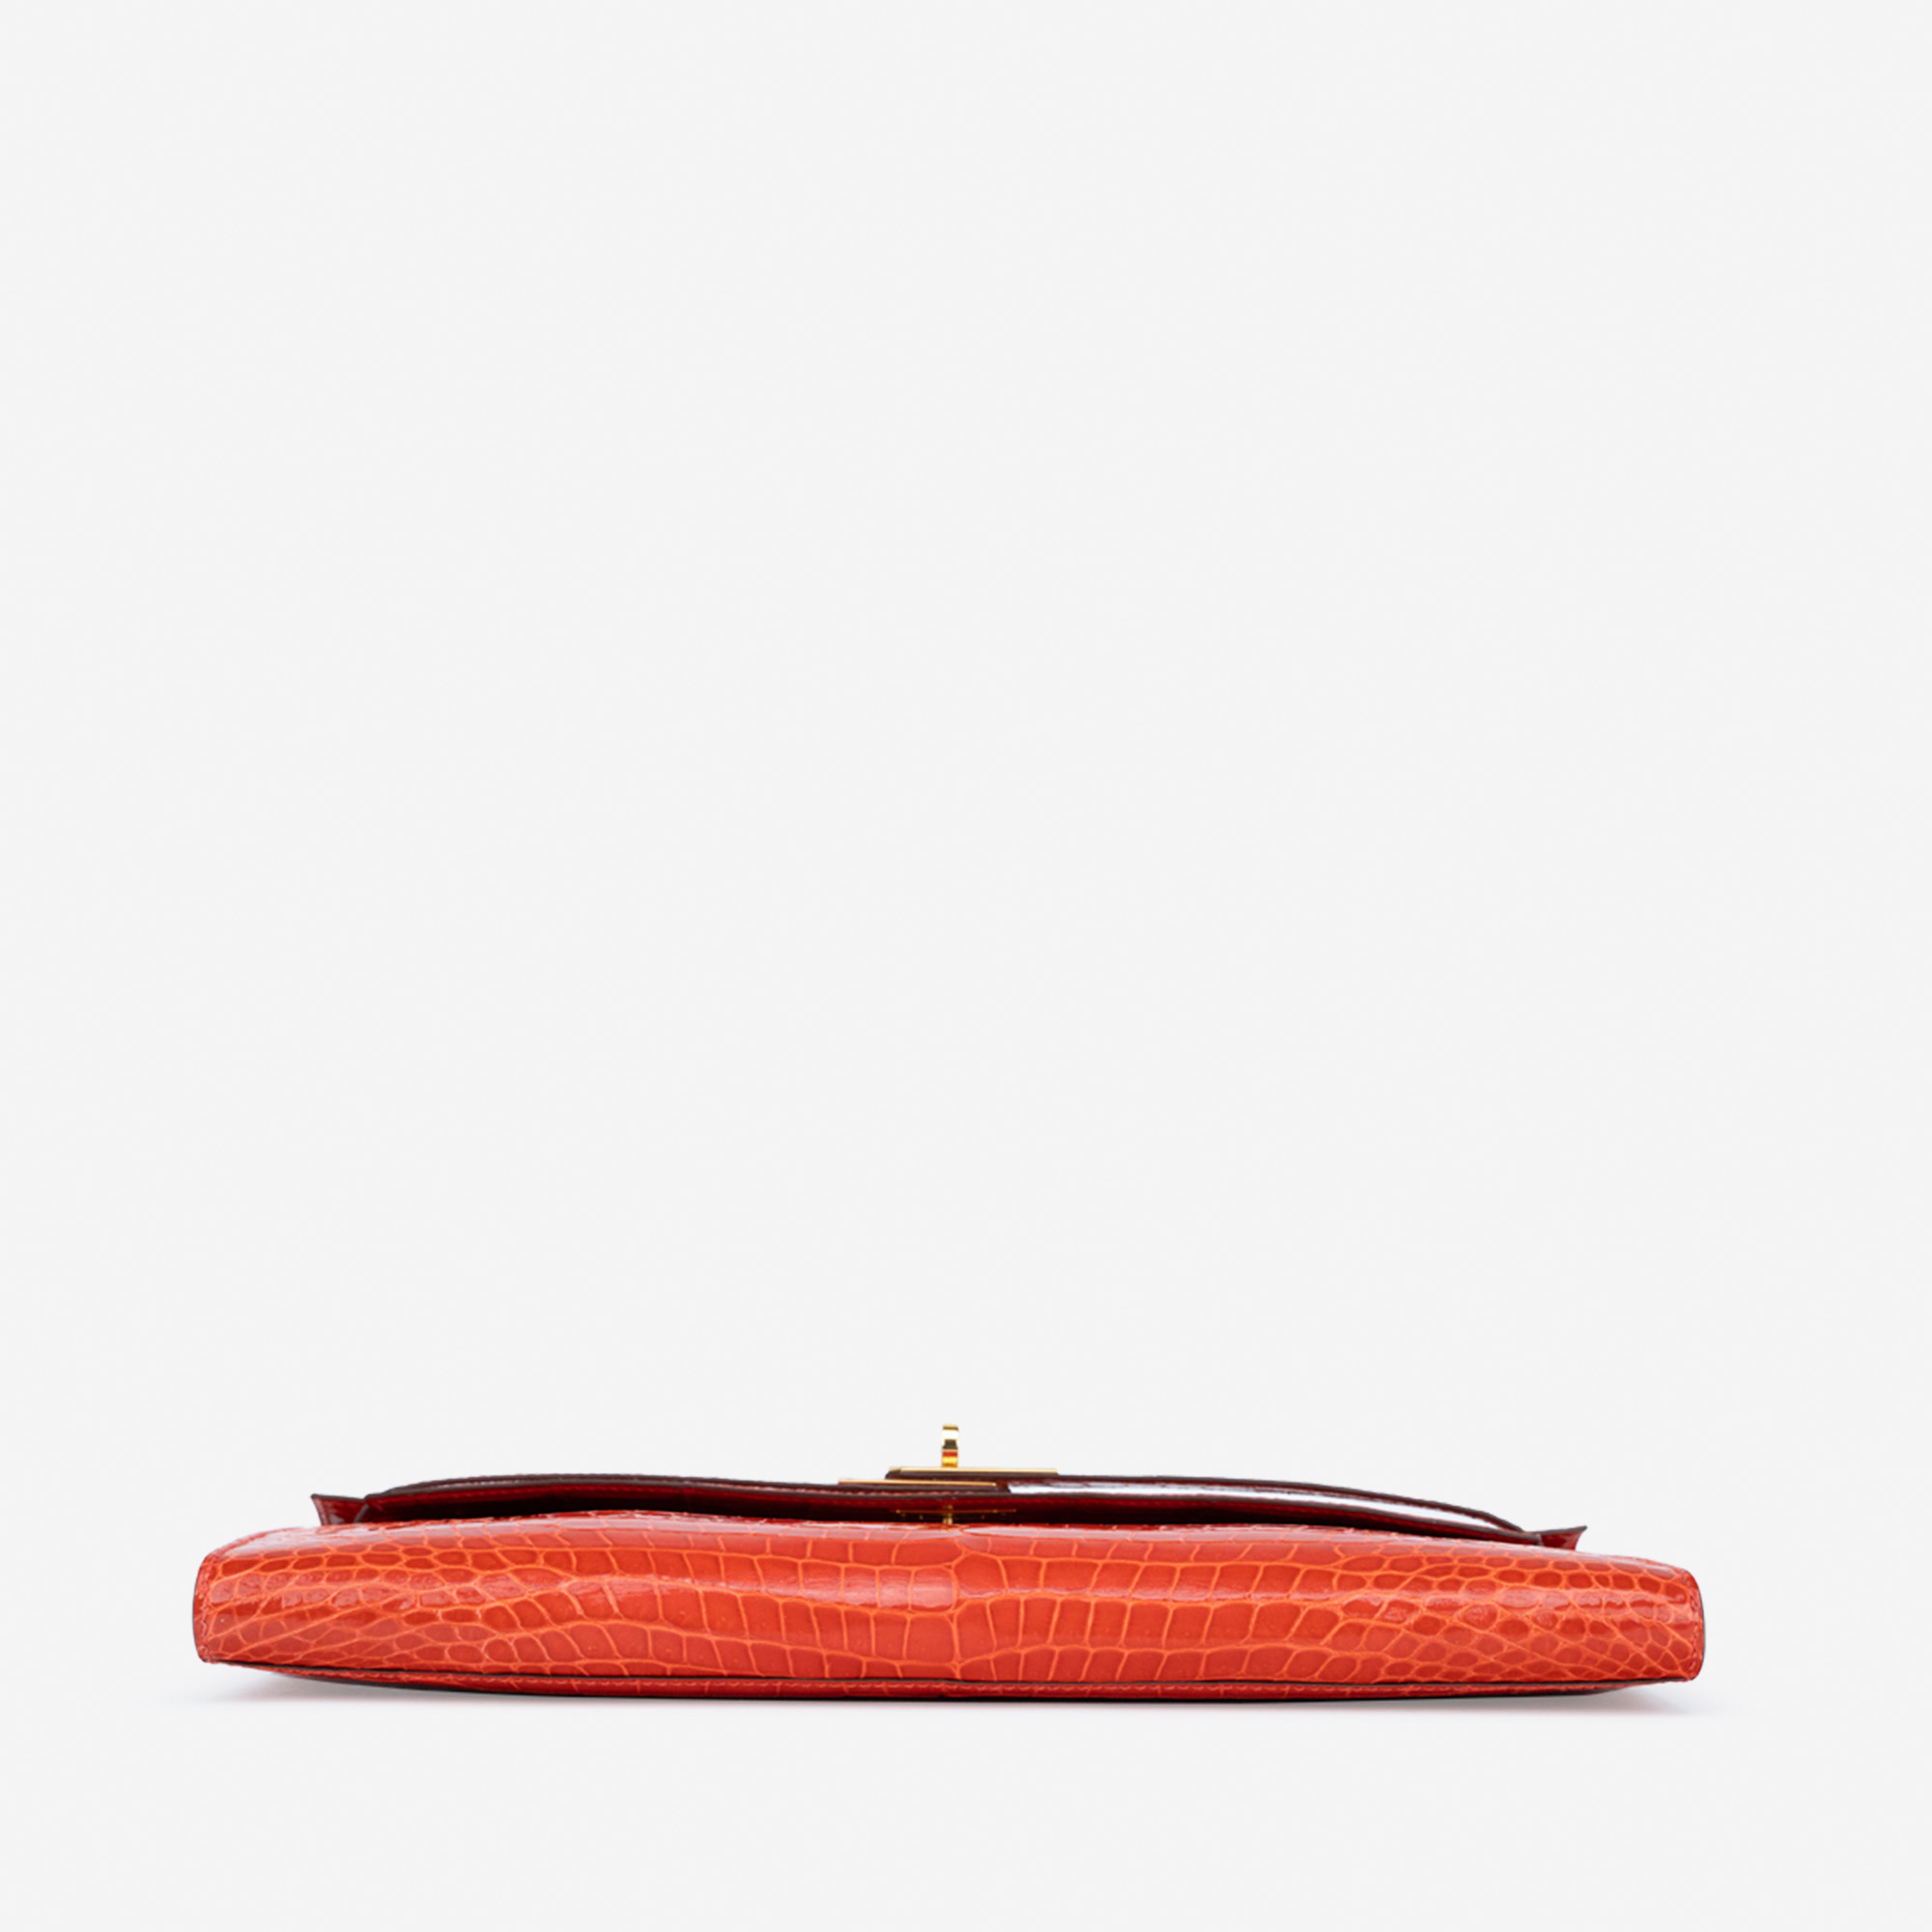 Sac Hermès d'occasion Kelly Cut Clutch Porosus Crocodile Orange Poppy Orange | Vendez votre sac de créateur sur Saclab.com